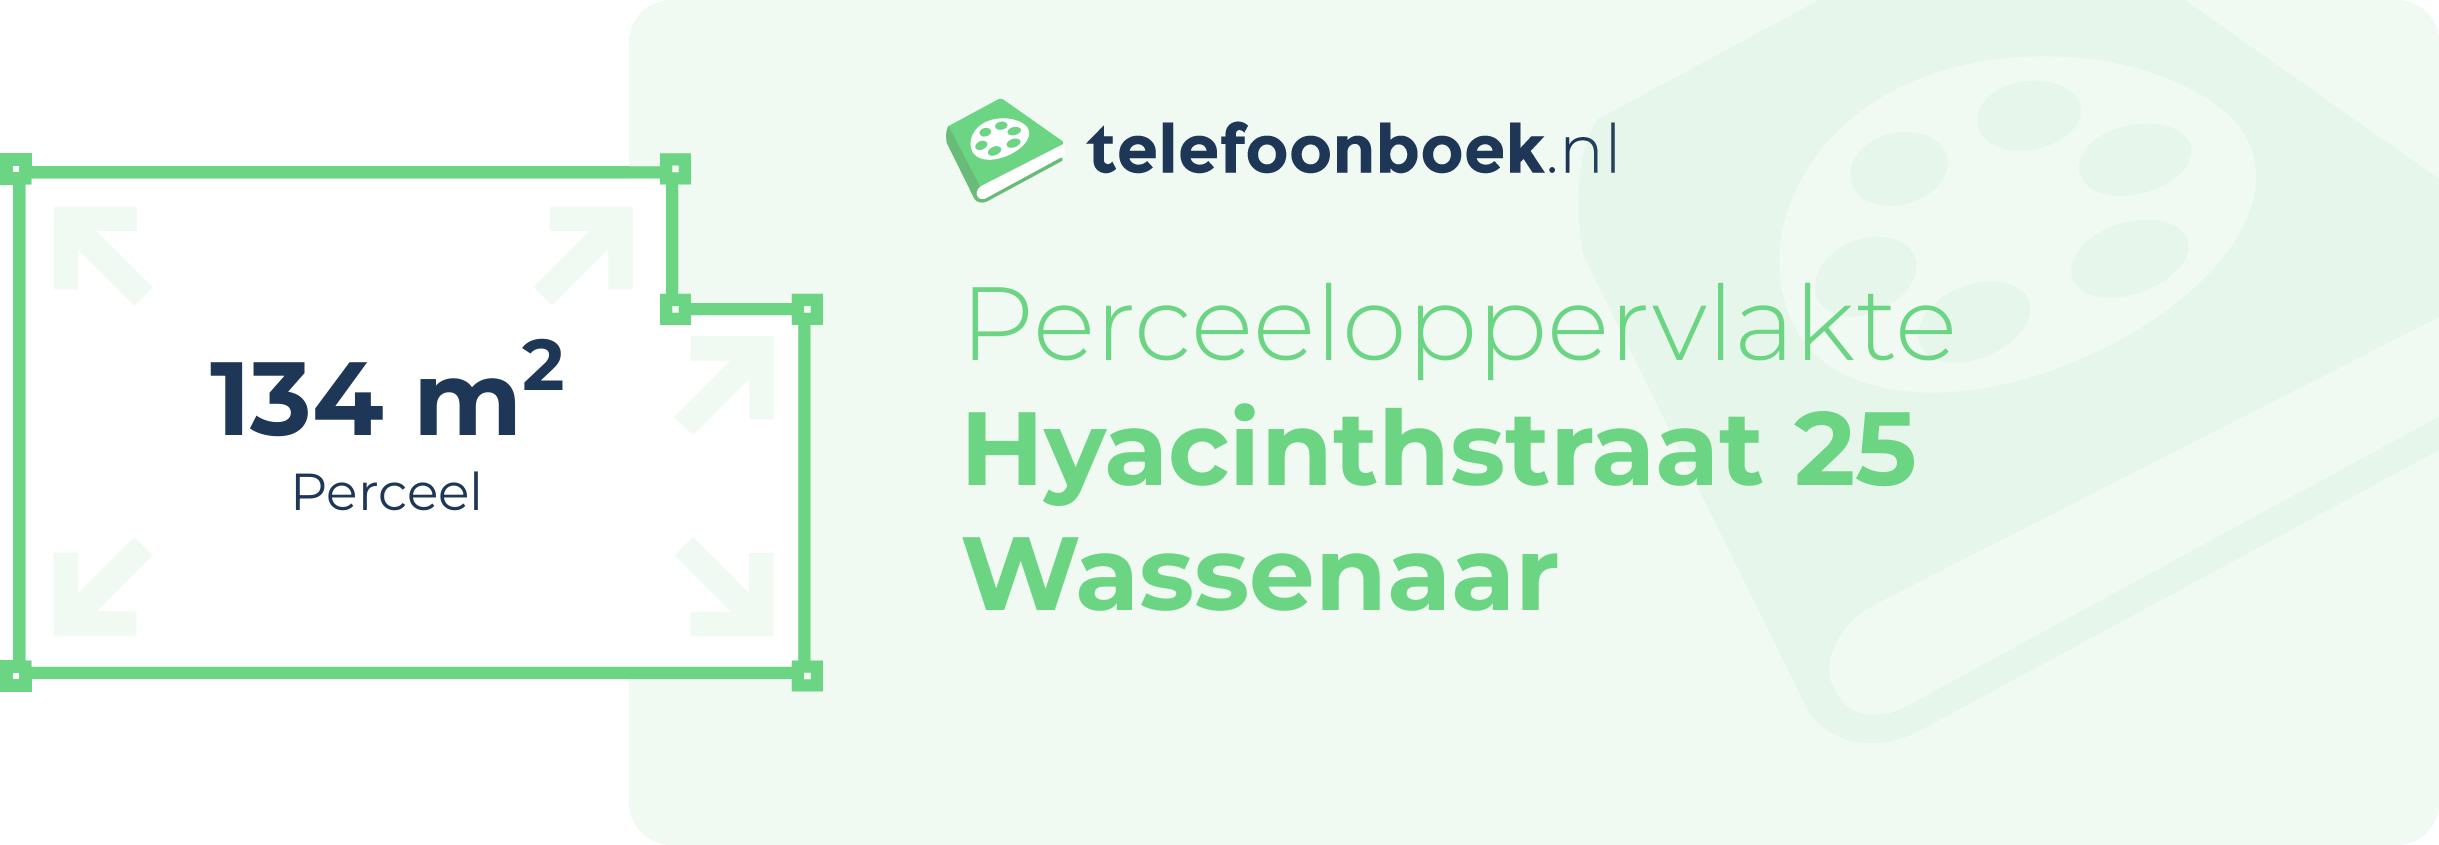 Perceeloppervlakte Hyacinthstraat 25 Wassenaar